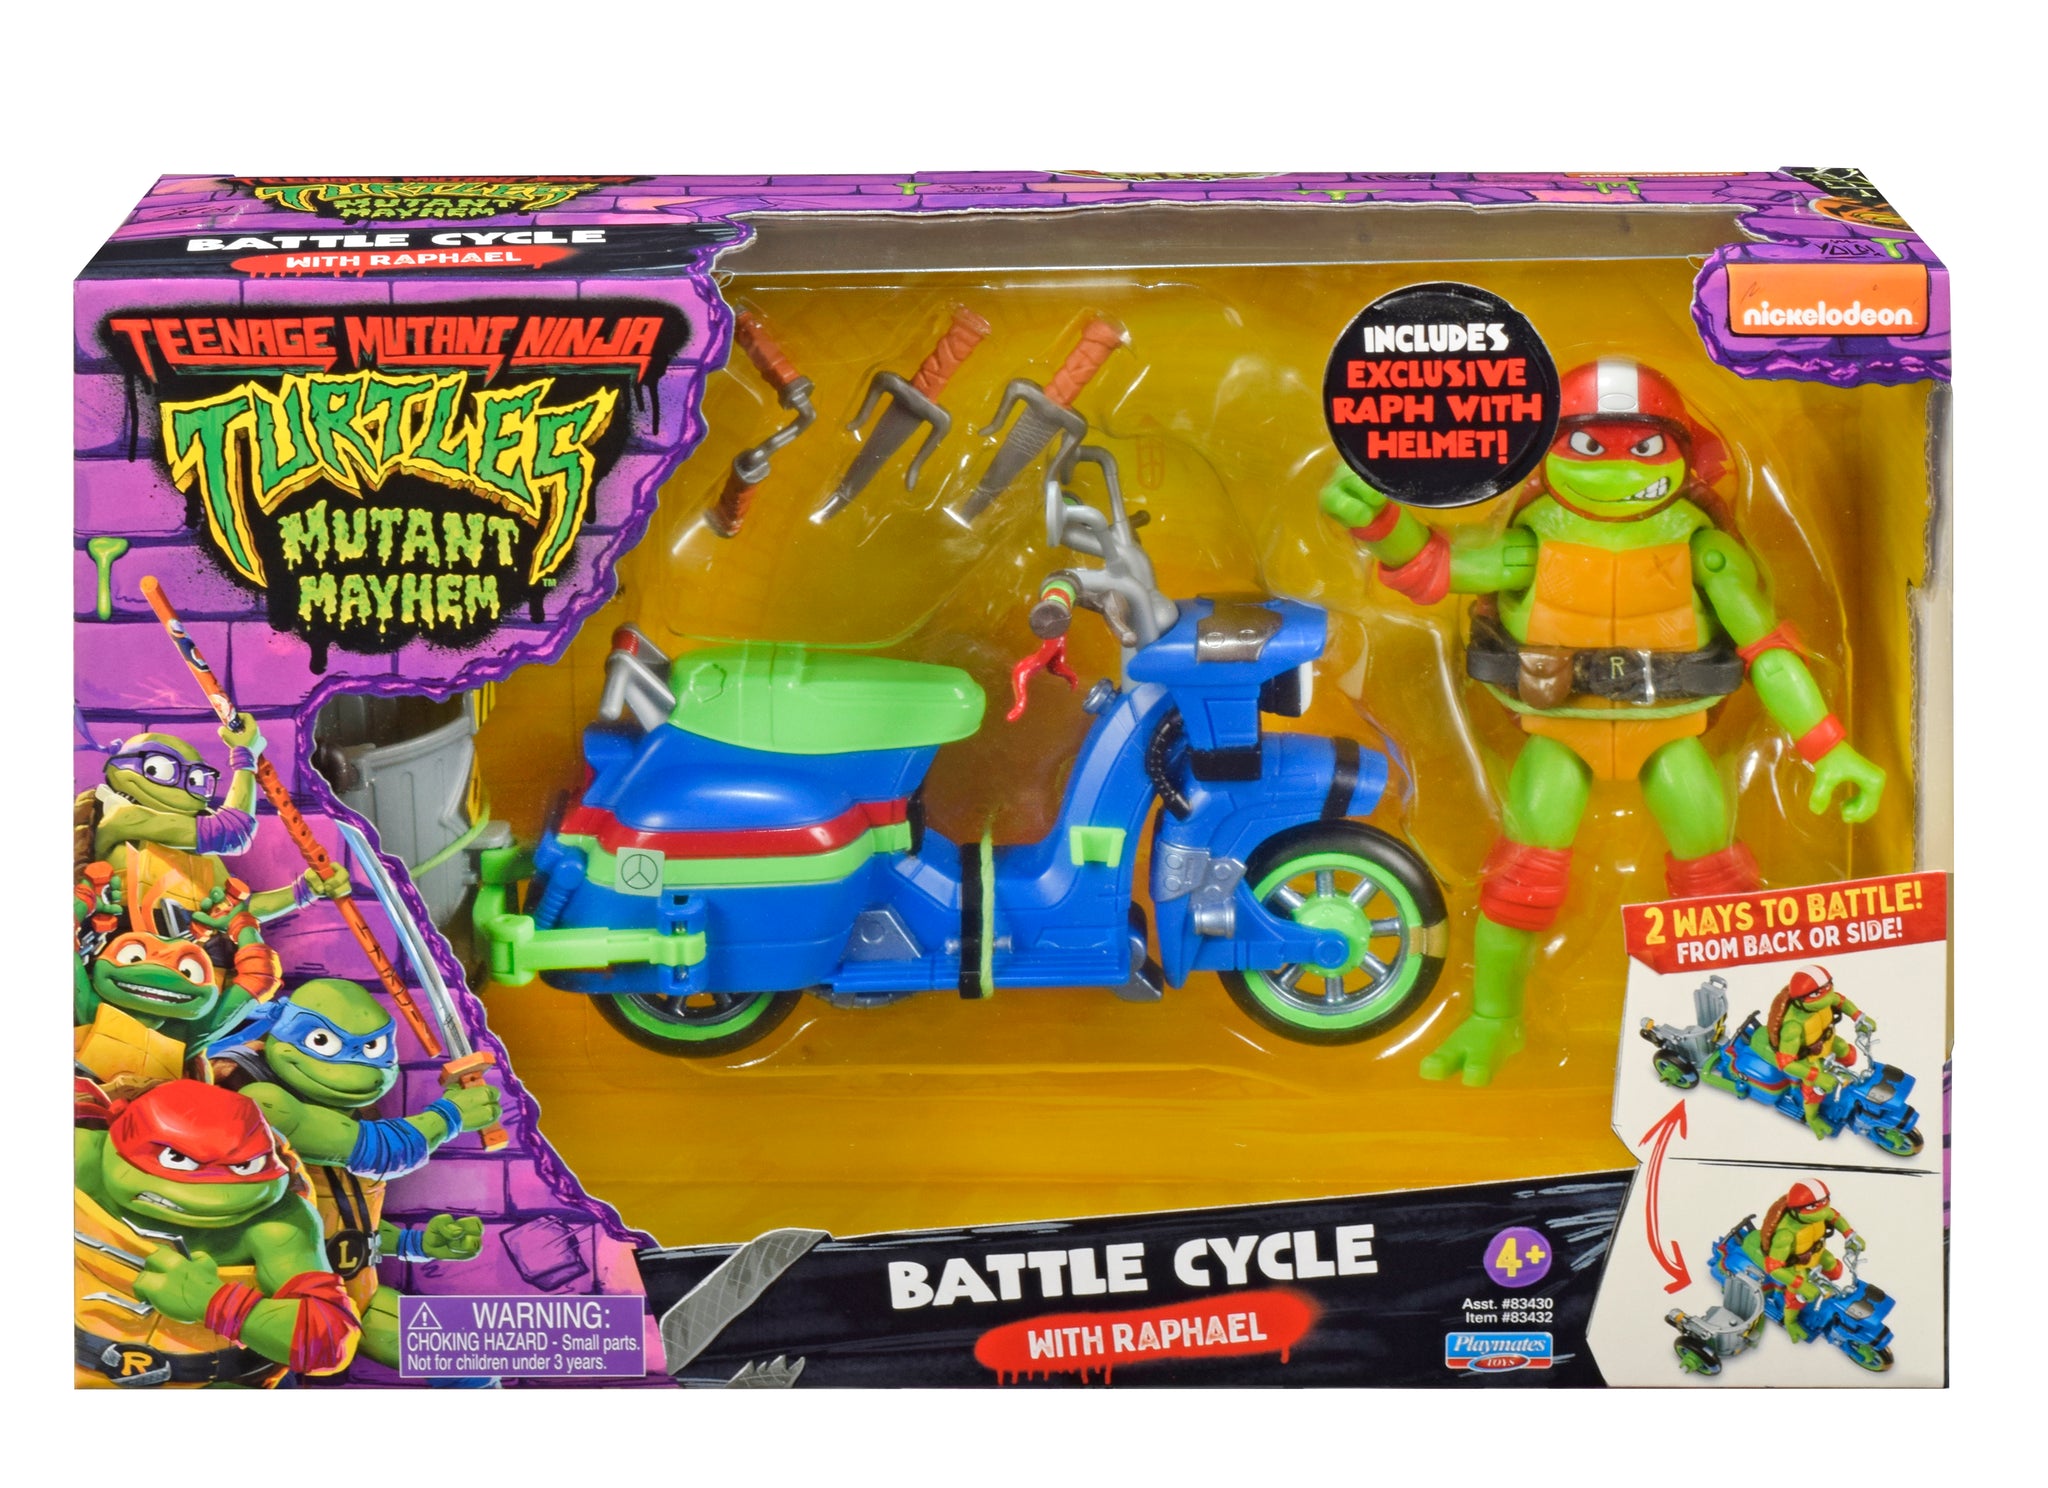 Teenage Mutant Ninja Turtles: Mutant Mayhem ‐ Playmates Toys